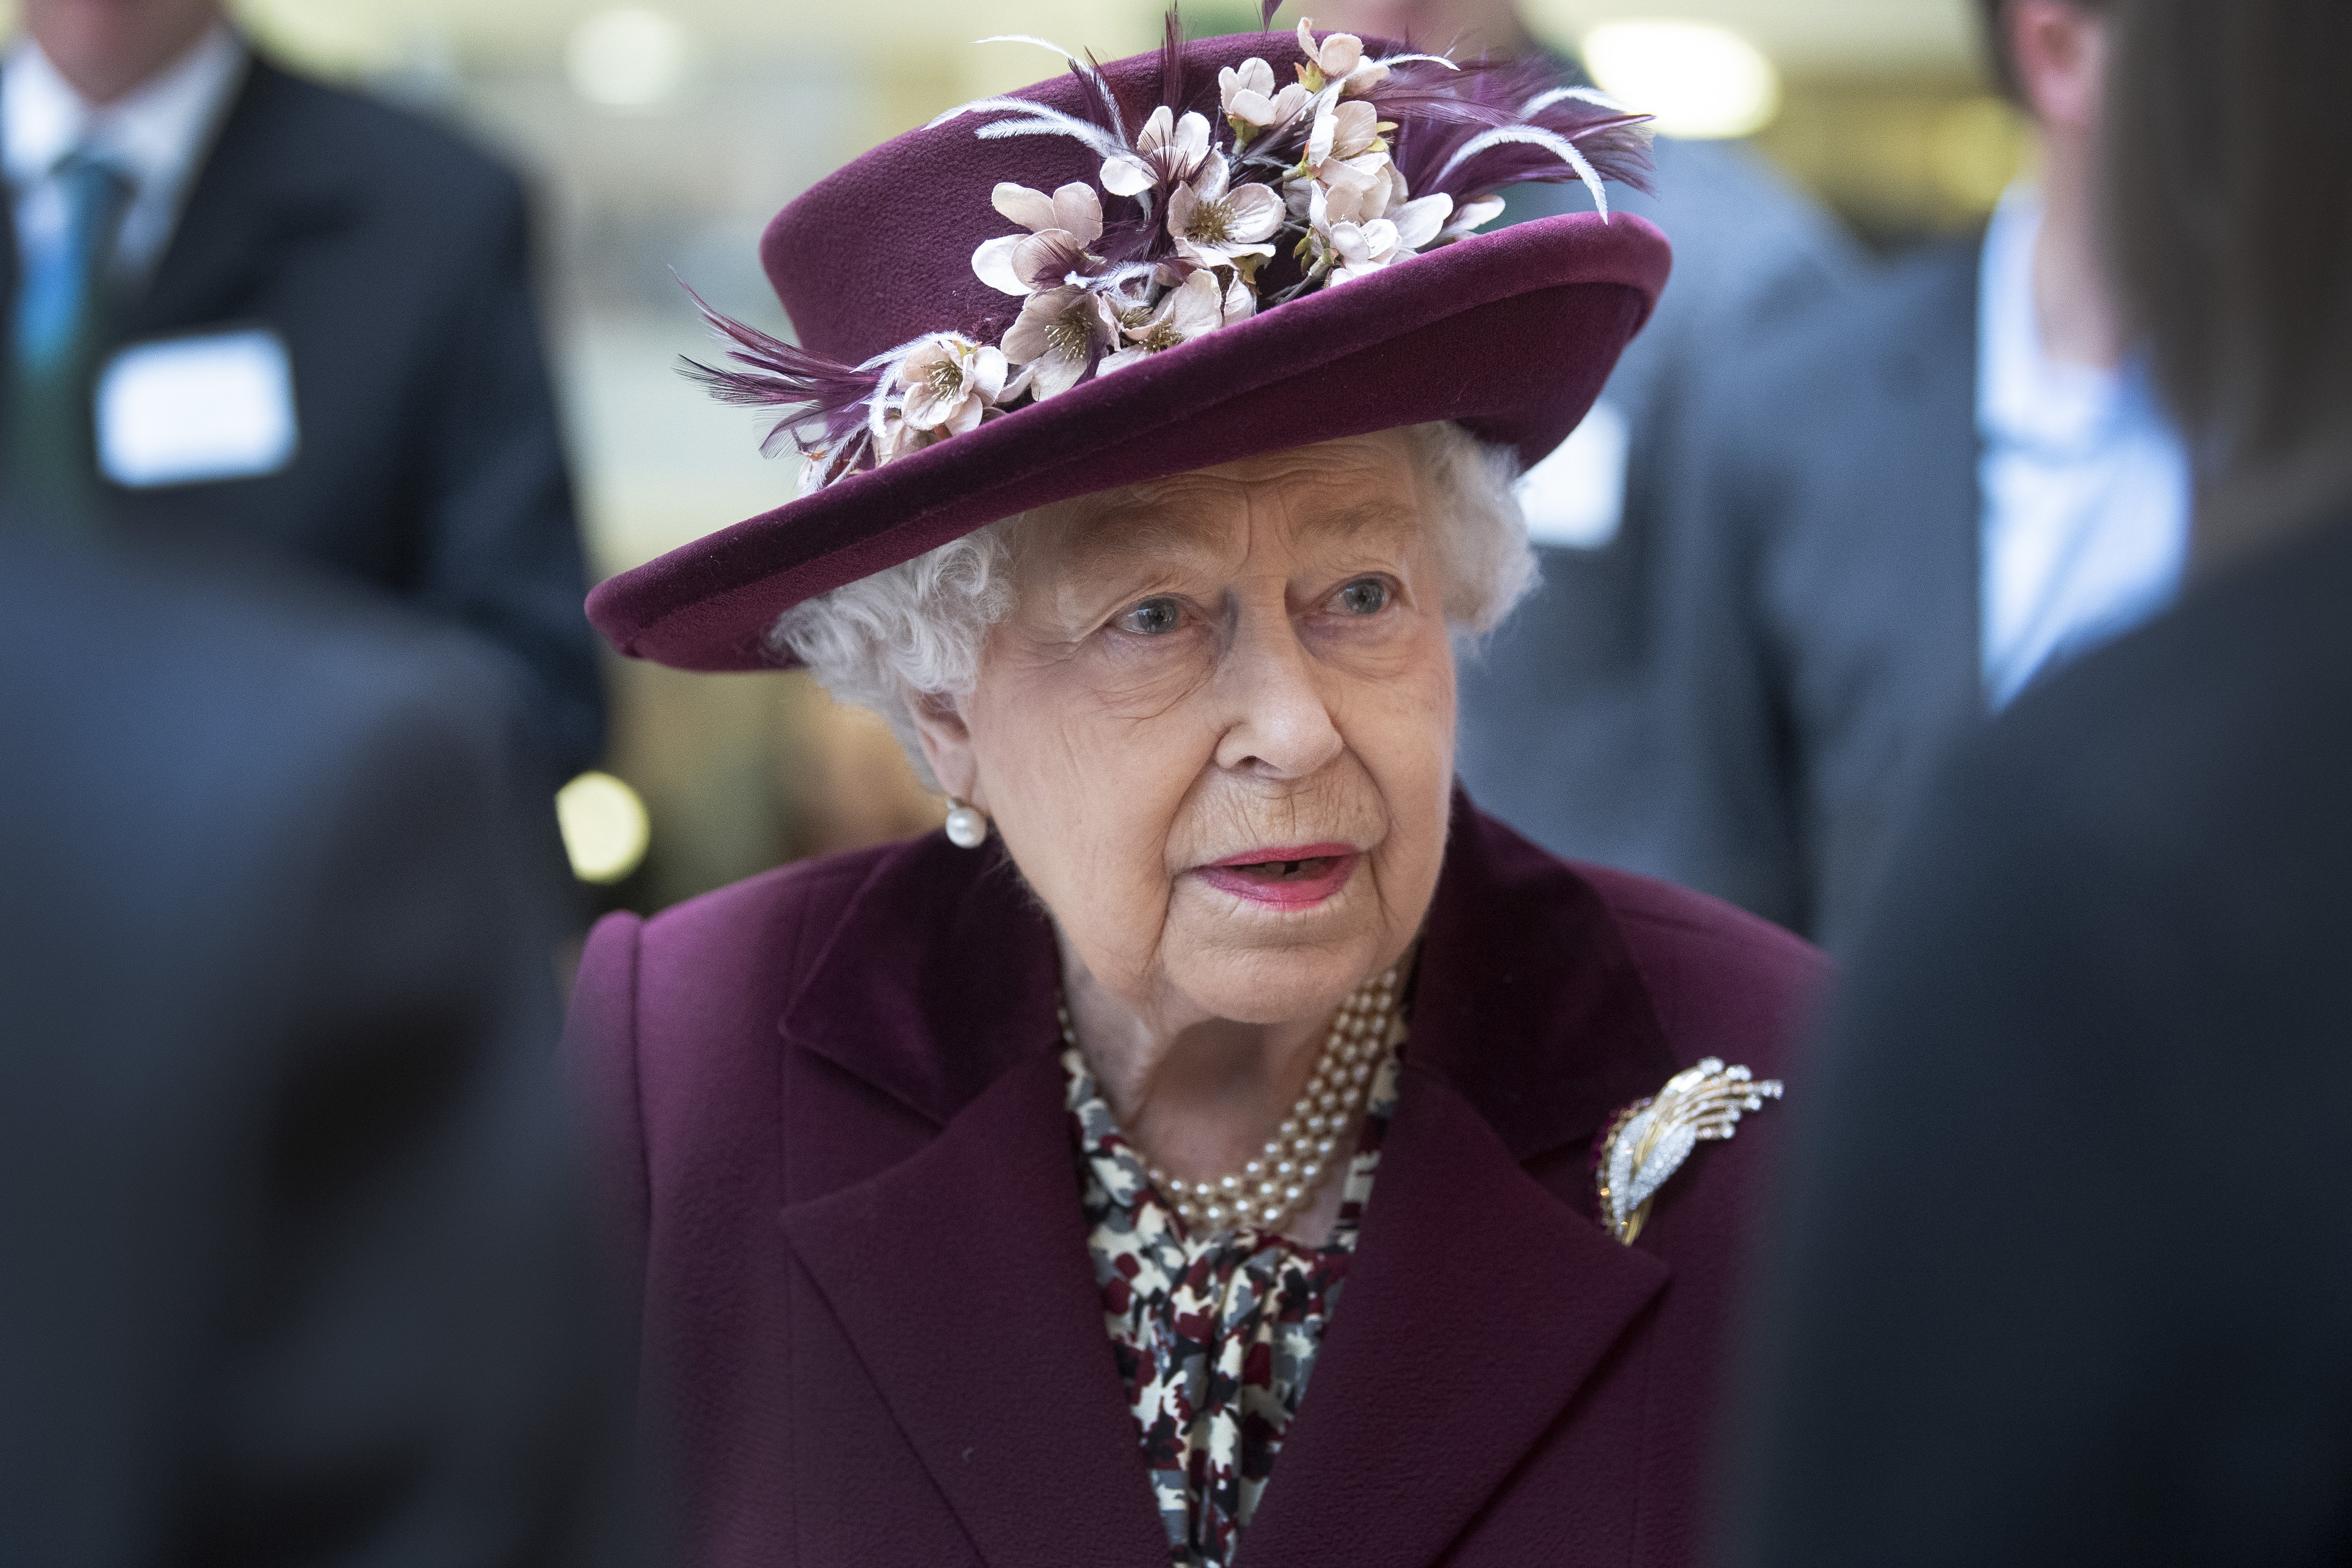 Afirman que un sirviente cercano a la reina Elizabeth II tiene coronavirus